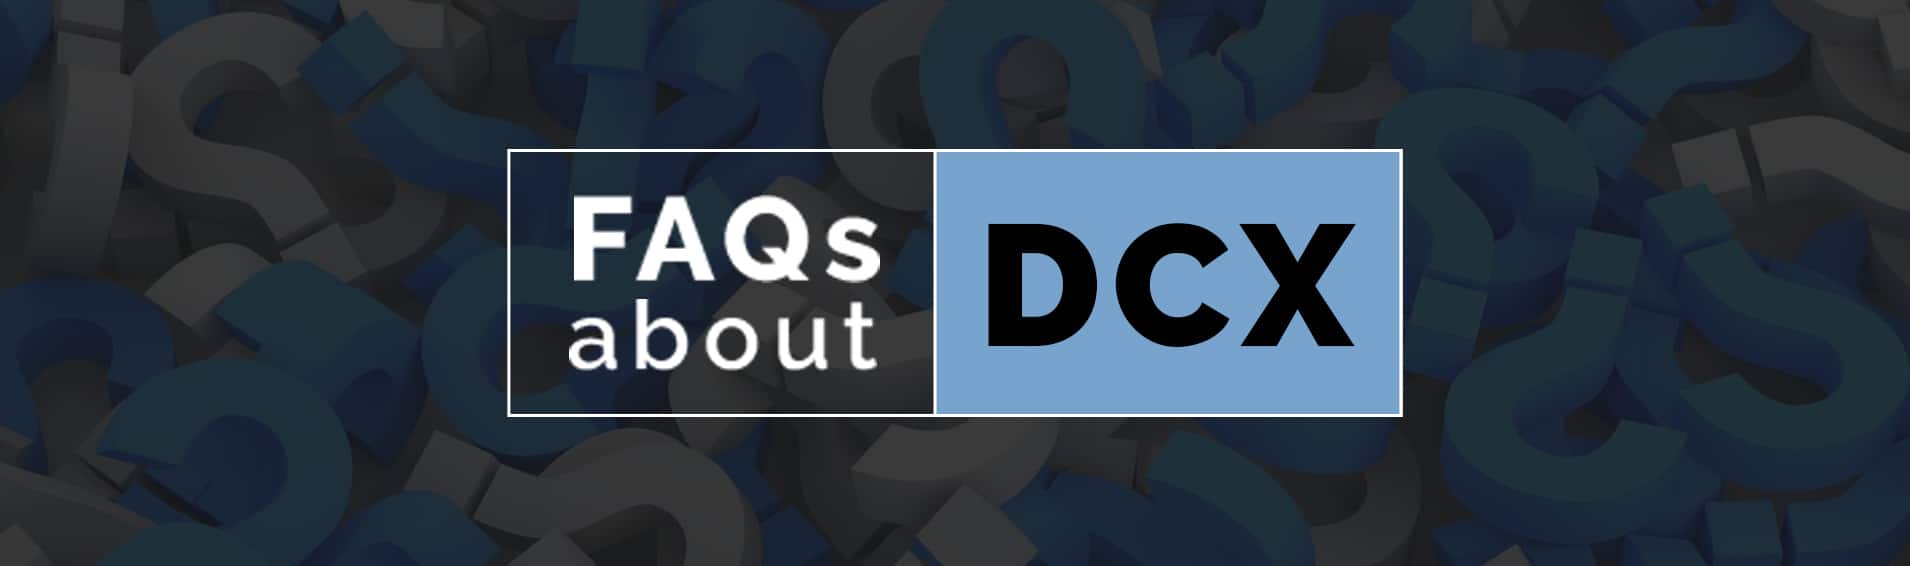 FAQs about DCX